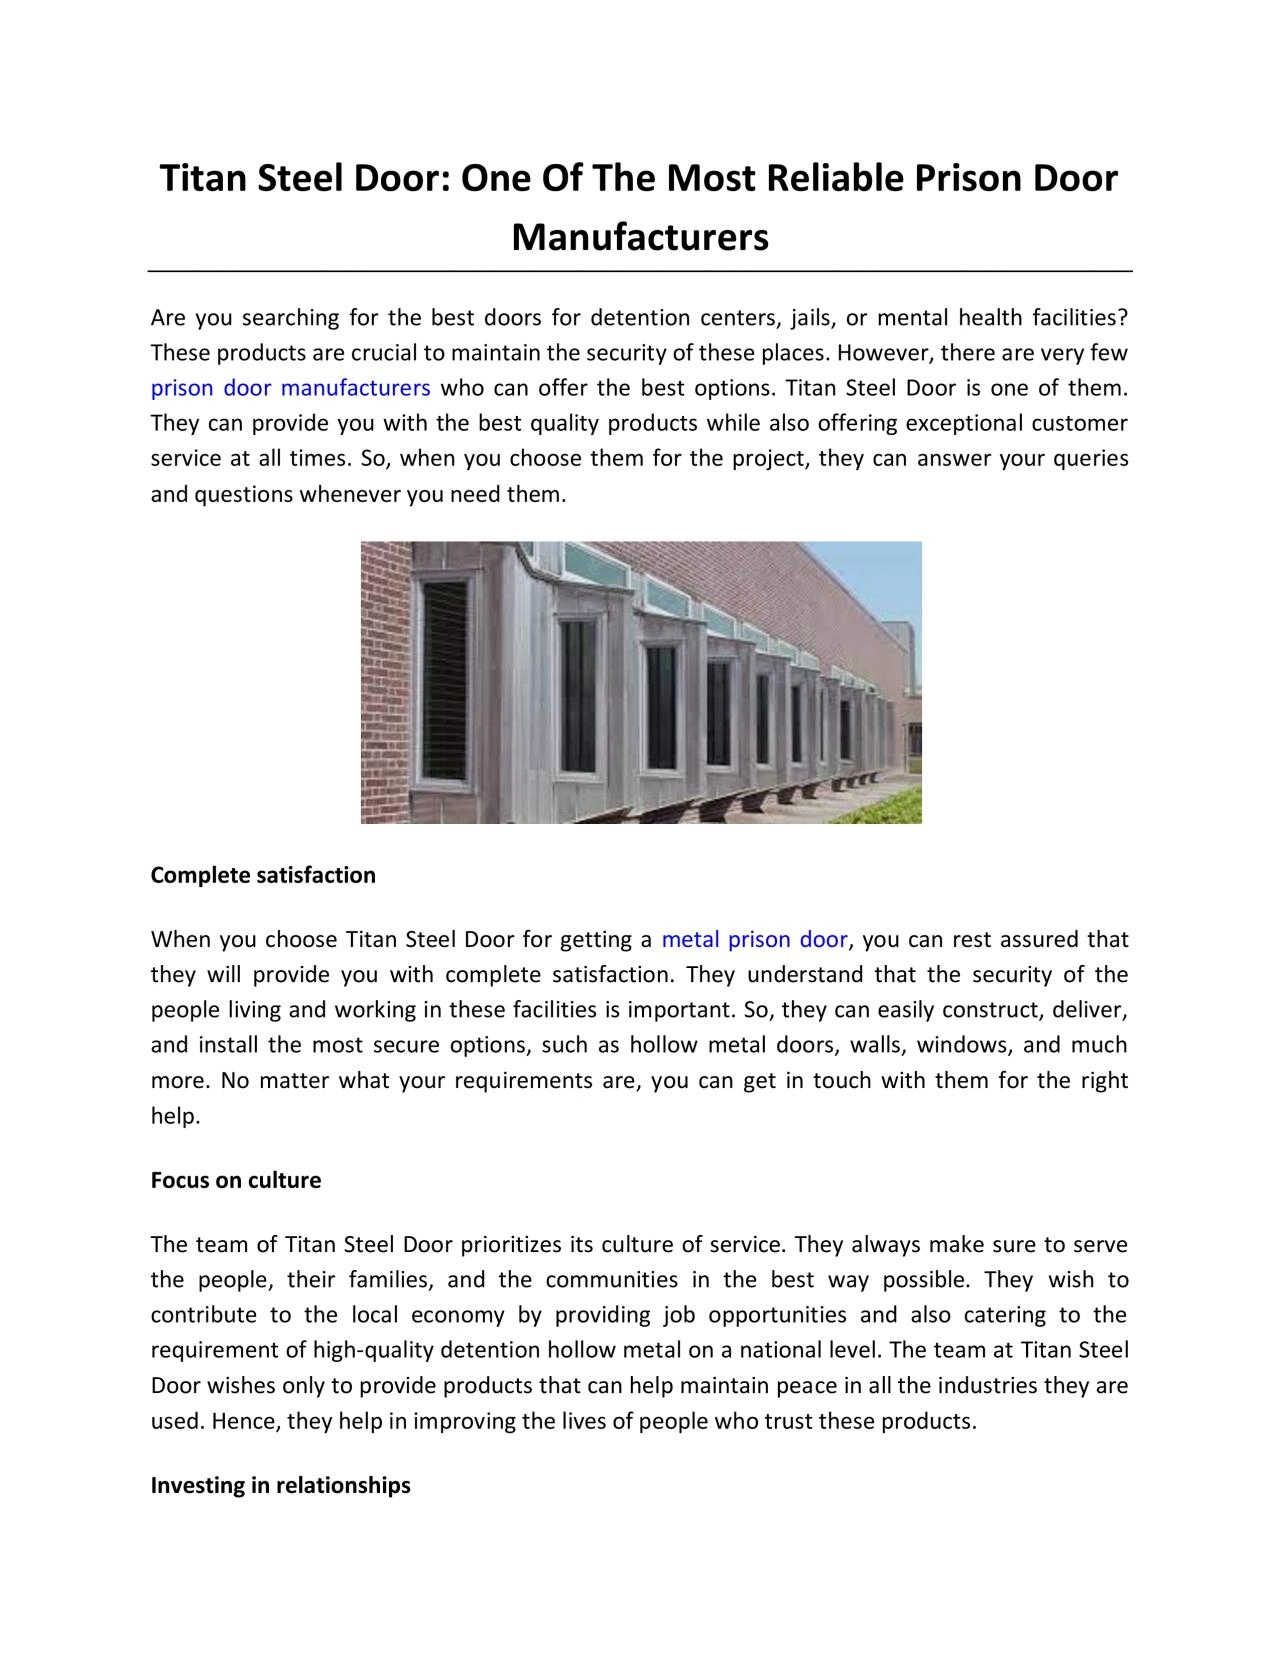 Titan Steel Door: One Of The Most Reliable Prison Door Manufacturers